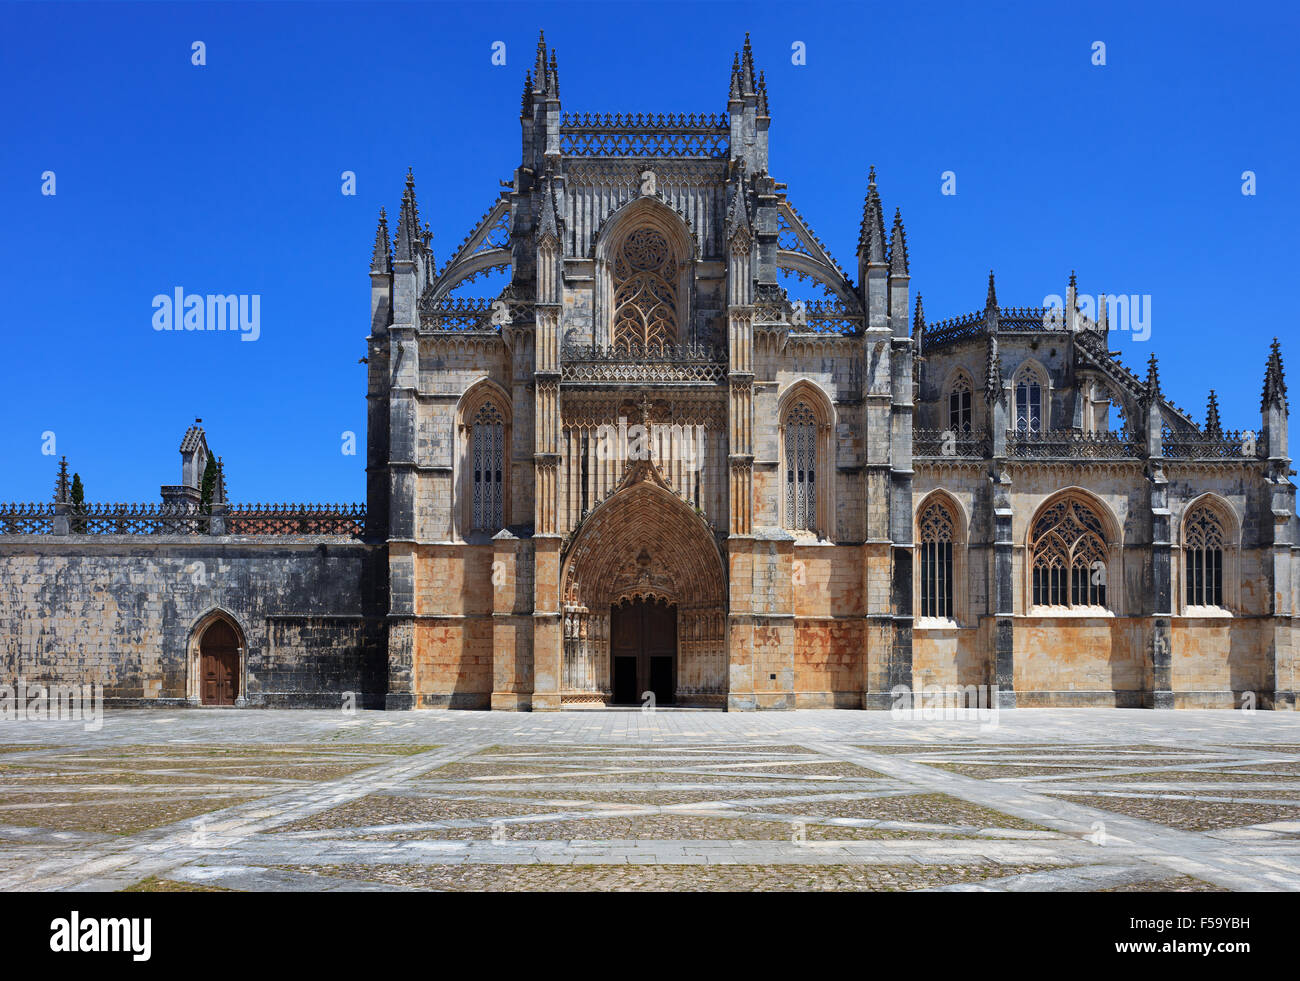 Monastère de Batalha. Unesco world heritage site, dans le district de Leiria, Portugal, Estremadura. Construire 1386-1517. Banque D'Images